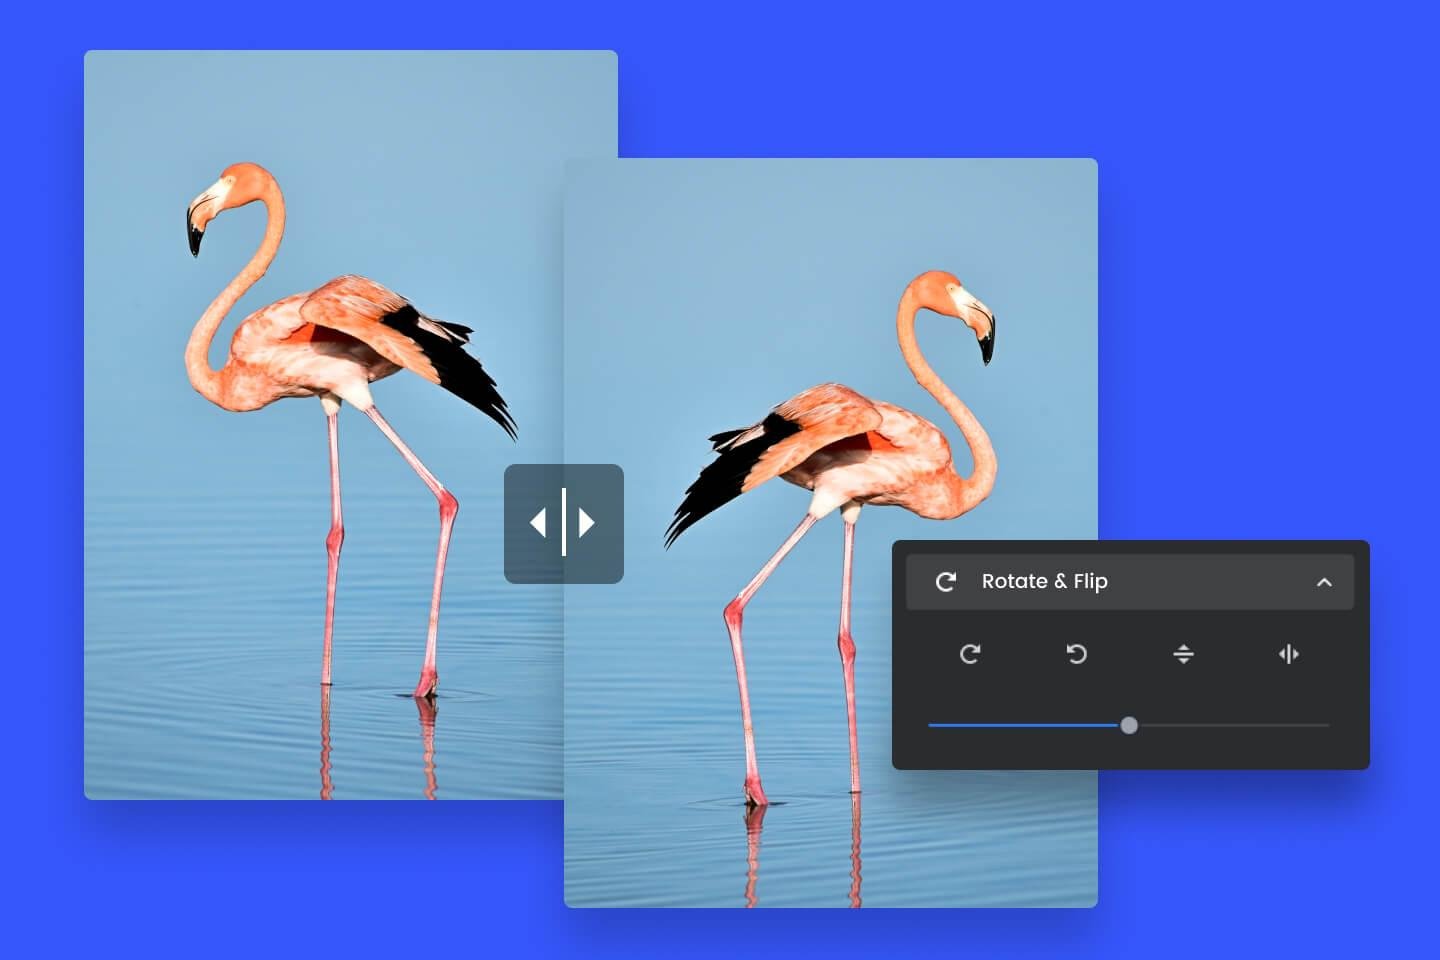 Invertir imagen online en segundos con la herramienta para voltear imagen de Fotor